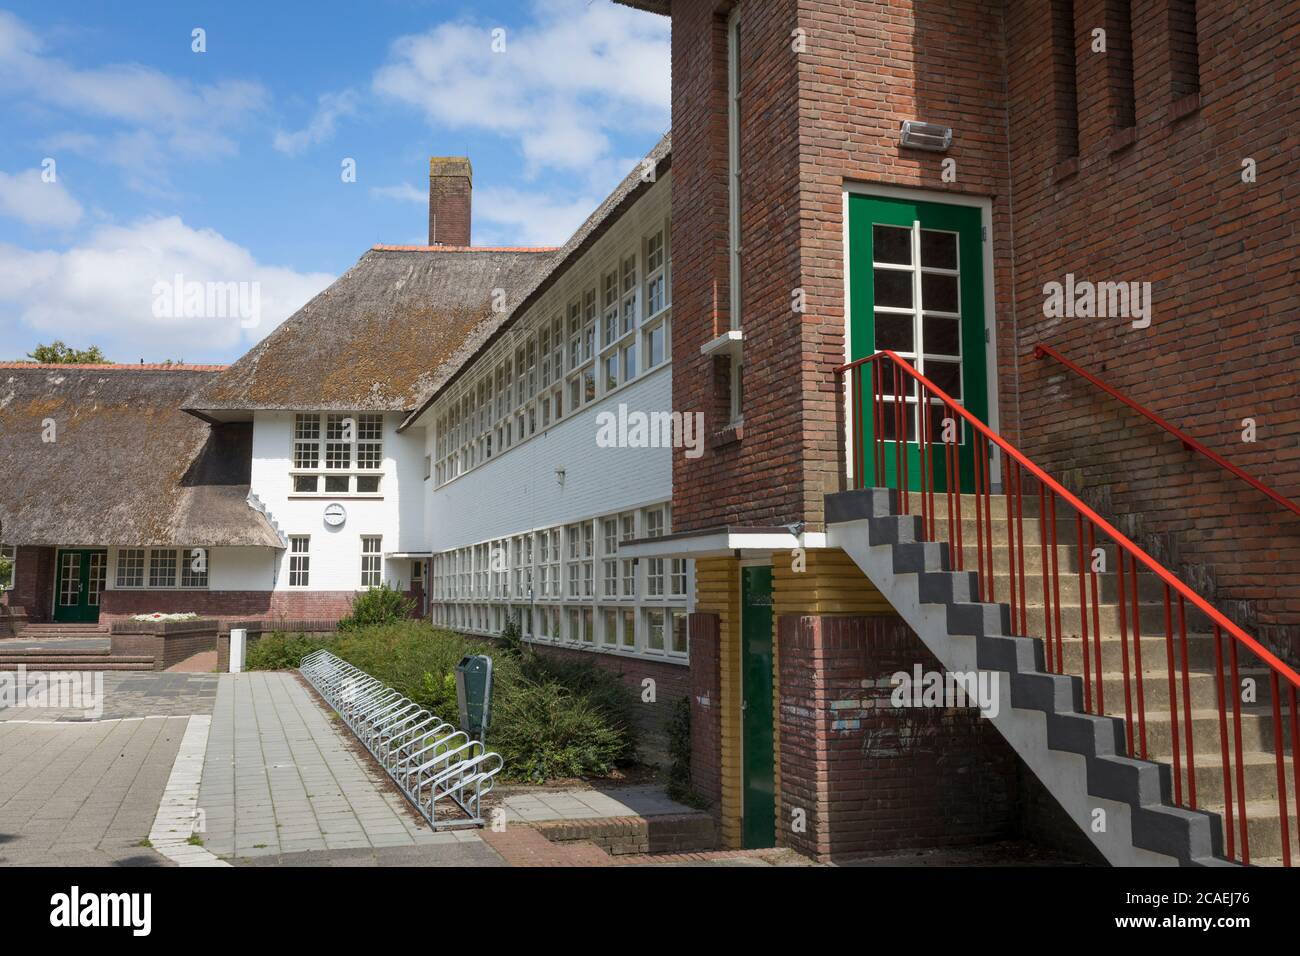 École de Fabritius avec toiture en paille construite en 1925 par l'architecte Dudok, Hilversum pays-Bas Banque D'Images